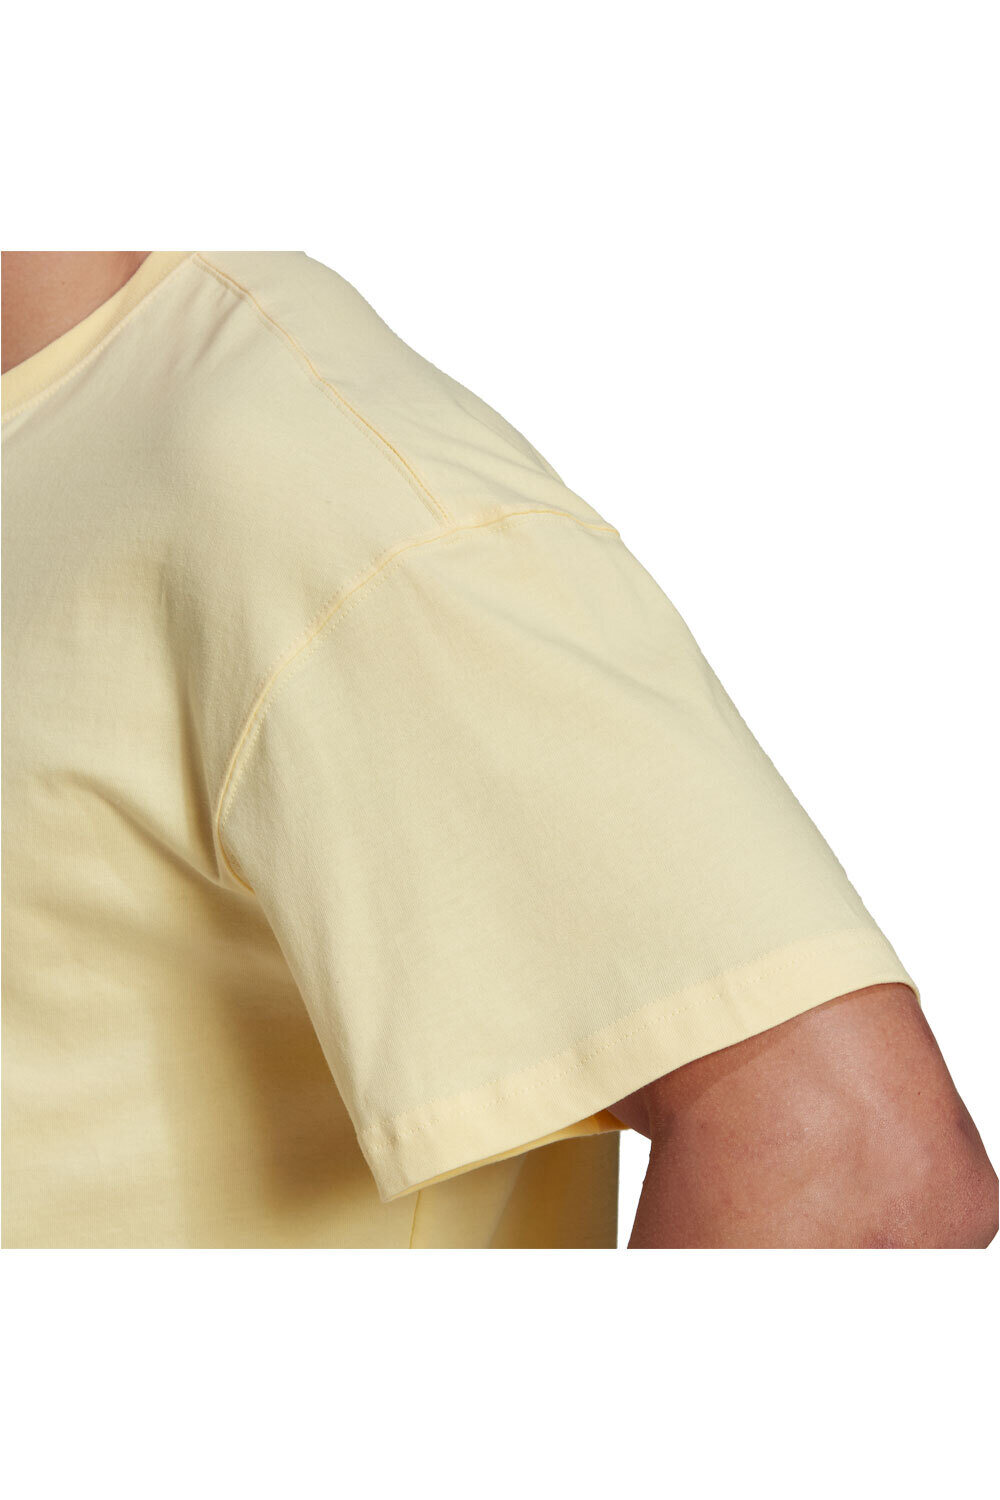 adidas camiseta manga corta hombre Essentials FeelVivid Drop Shoulder 04